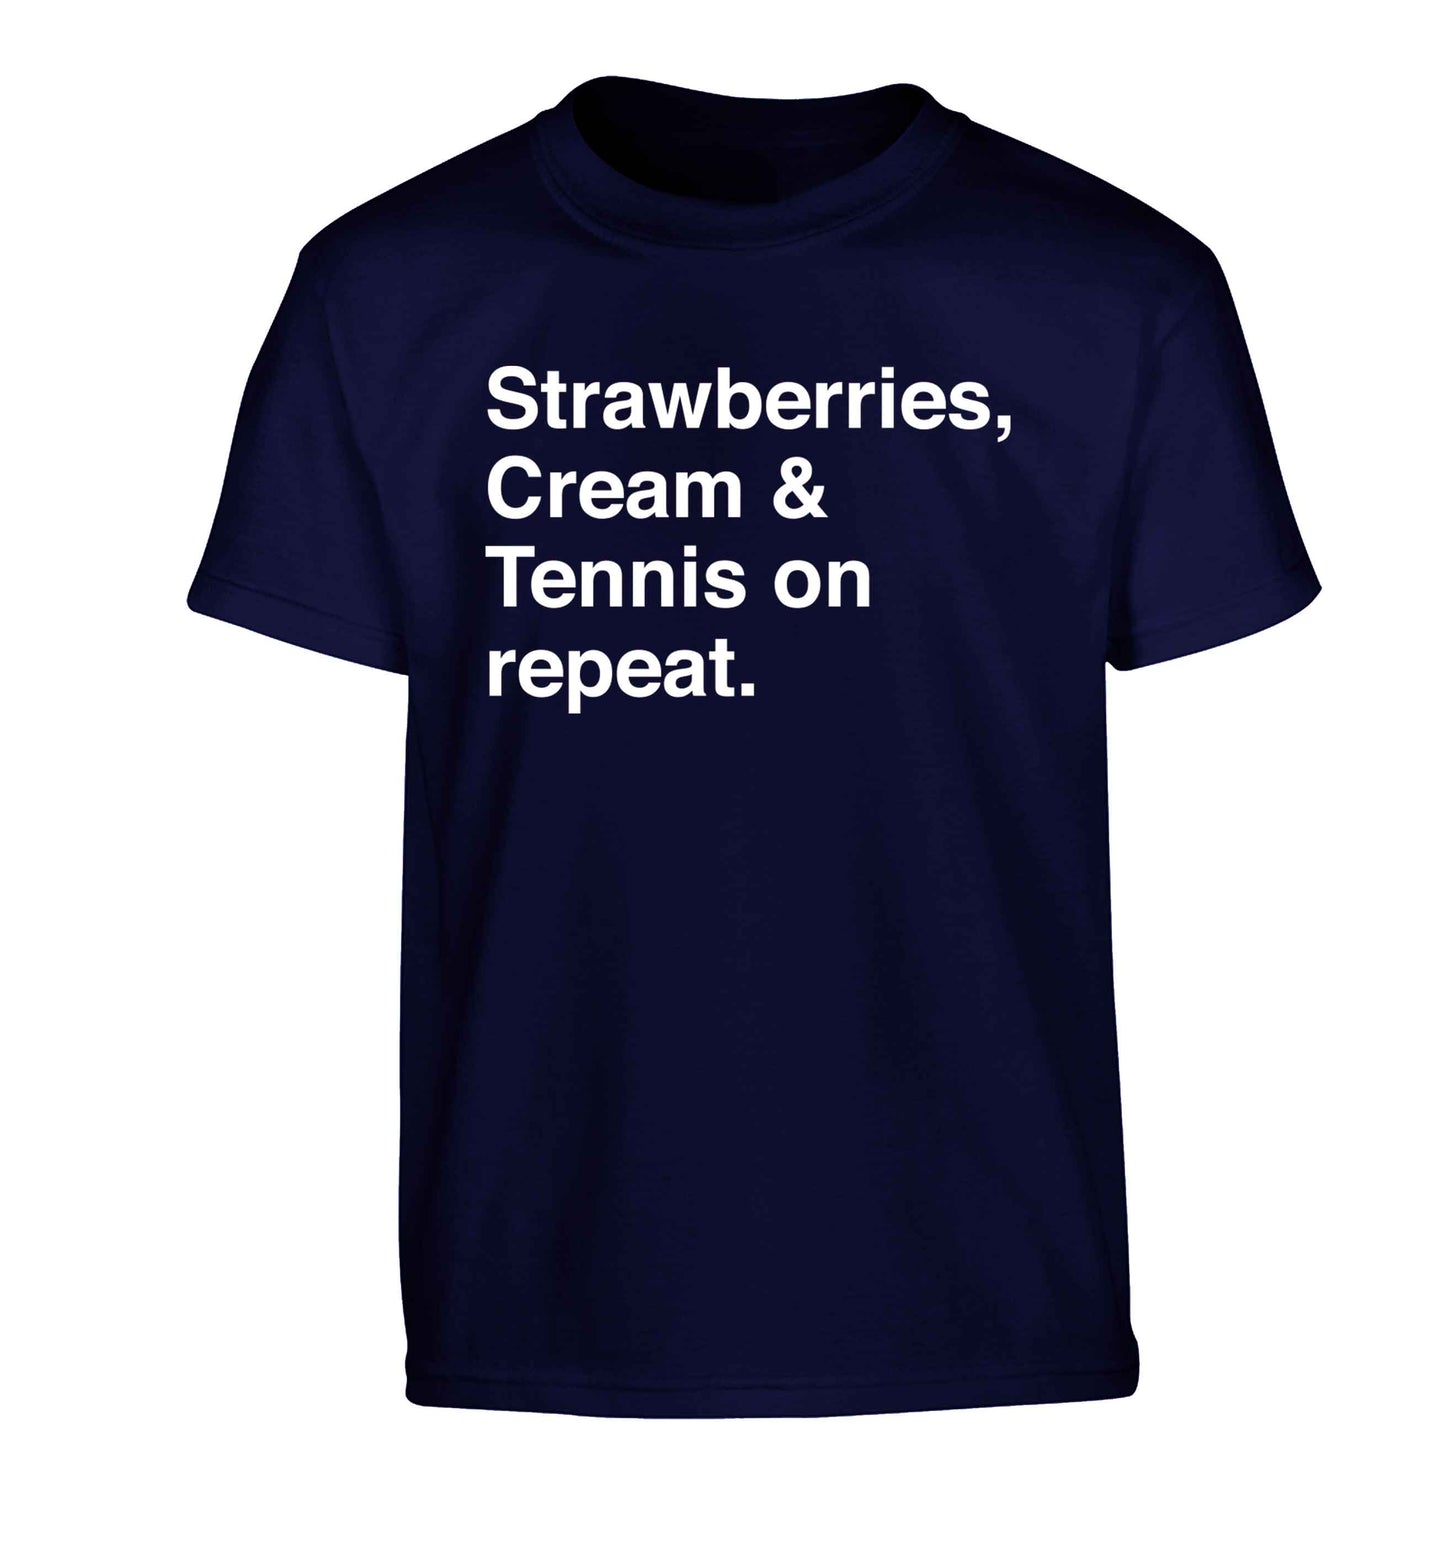 Strawberries, cream and tennis on repeat Children's navy Tshirt 12-13 Years